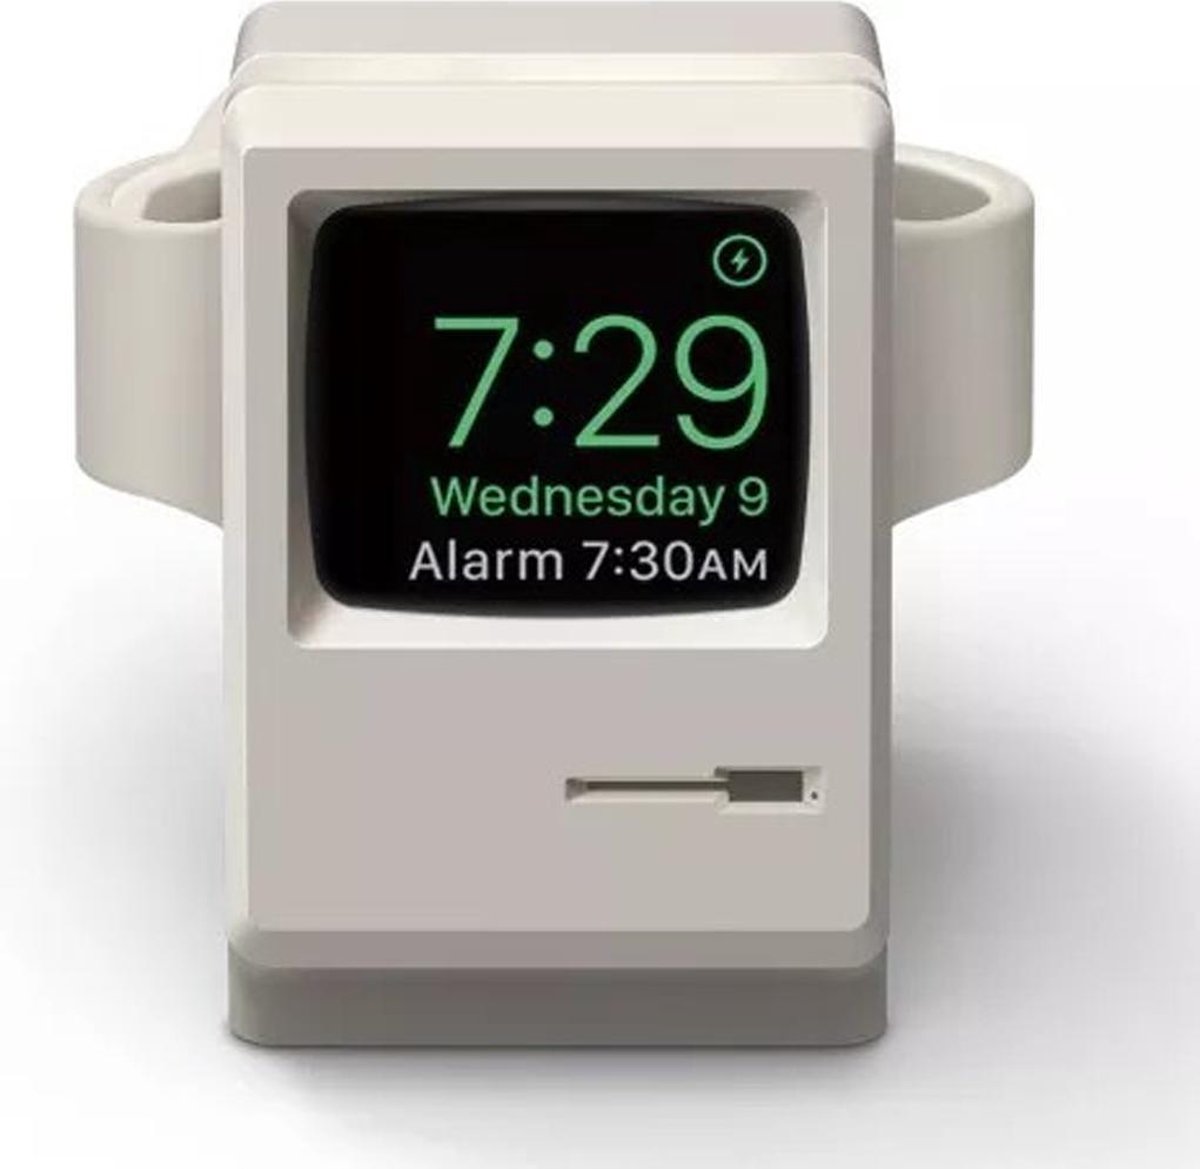 By Qubix retro oplader geschikt voor de Apple Watch - Lichtgrijs - Jouw oplader is nu omgetoverd tot de eerste Apple computer uit de geschiedenis